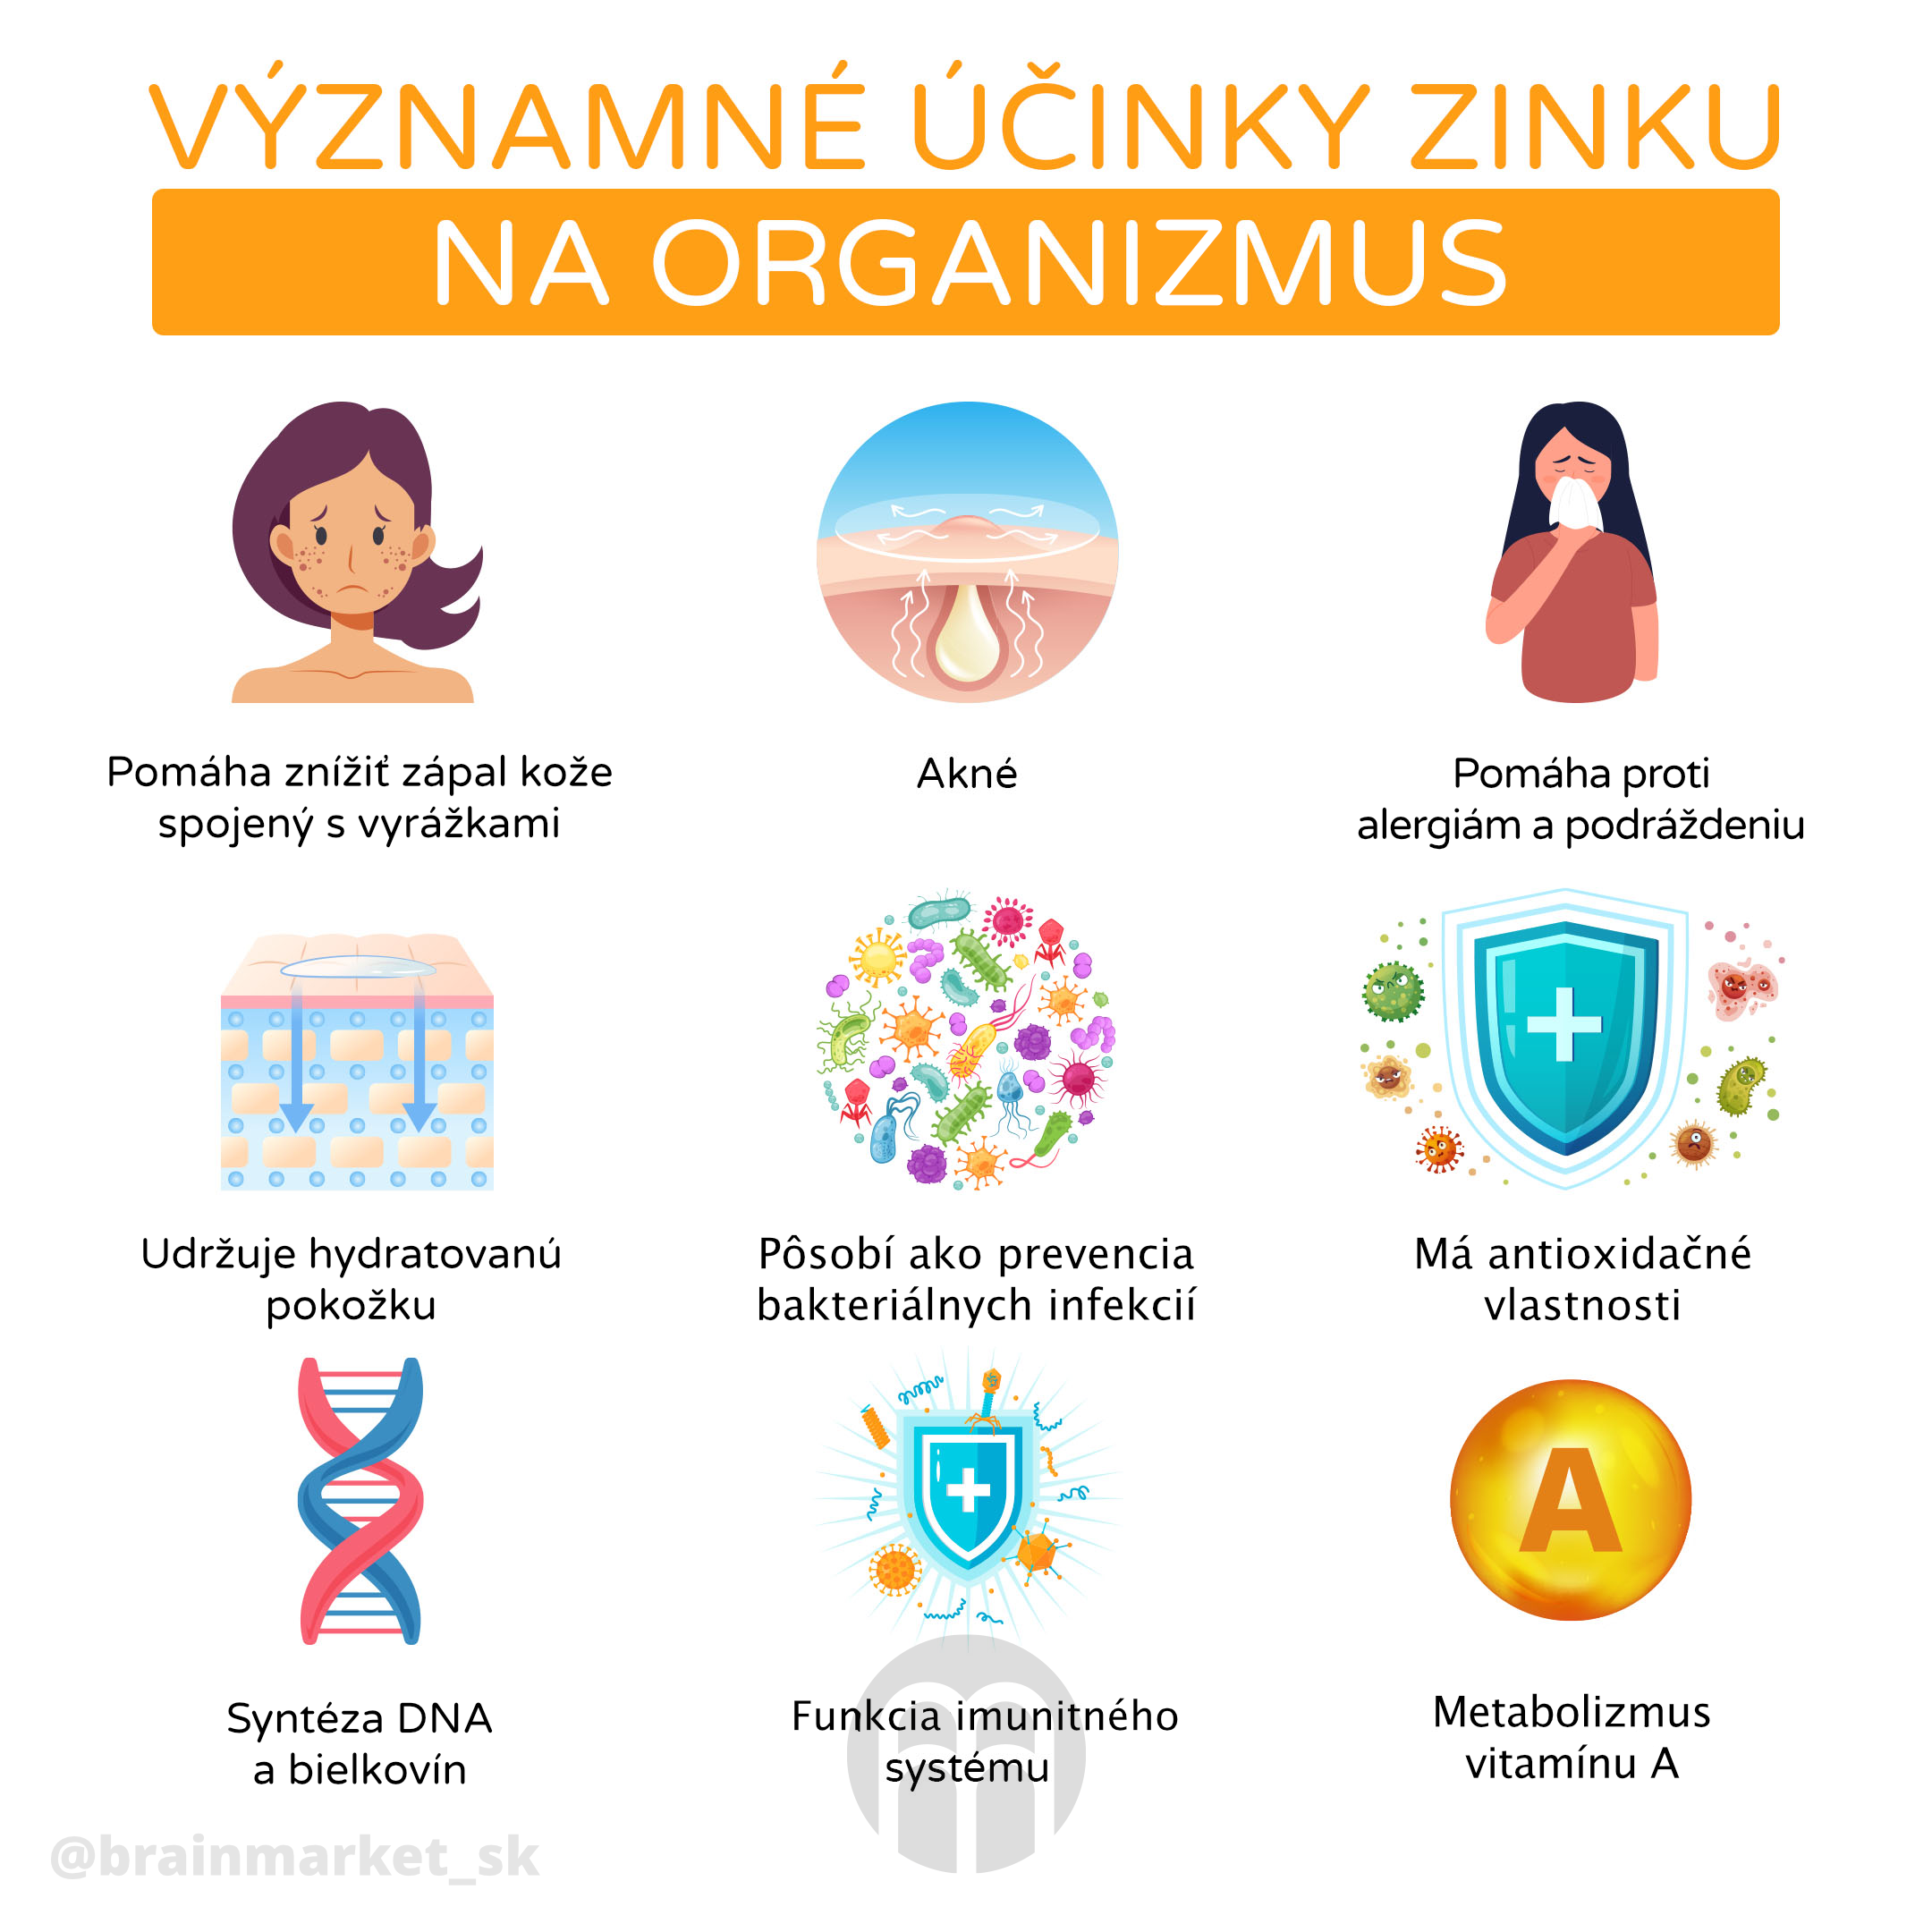 vyznamne_ucinky_zinek_infografika_brainmarket_CZ